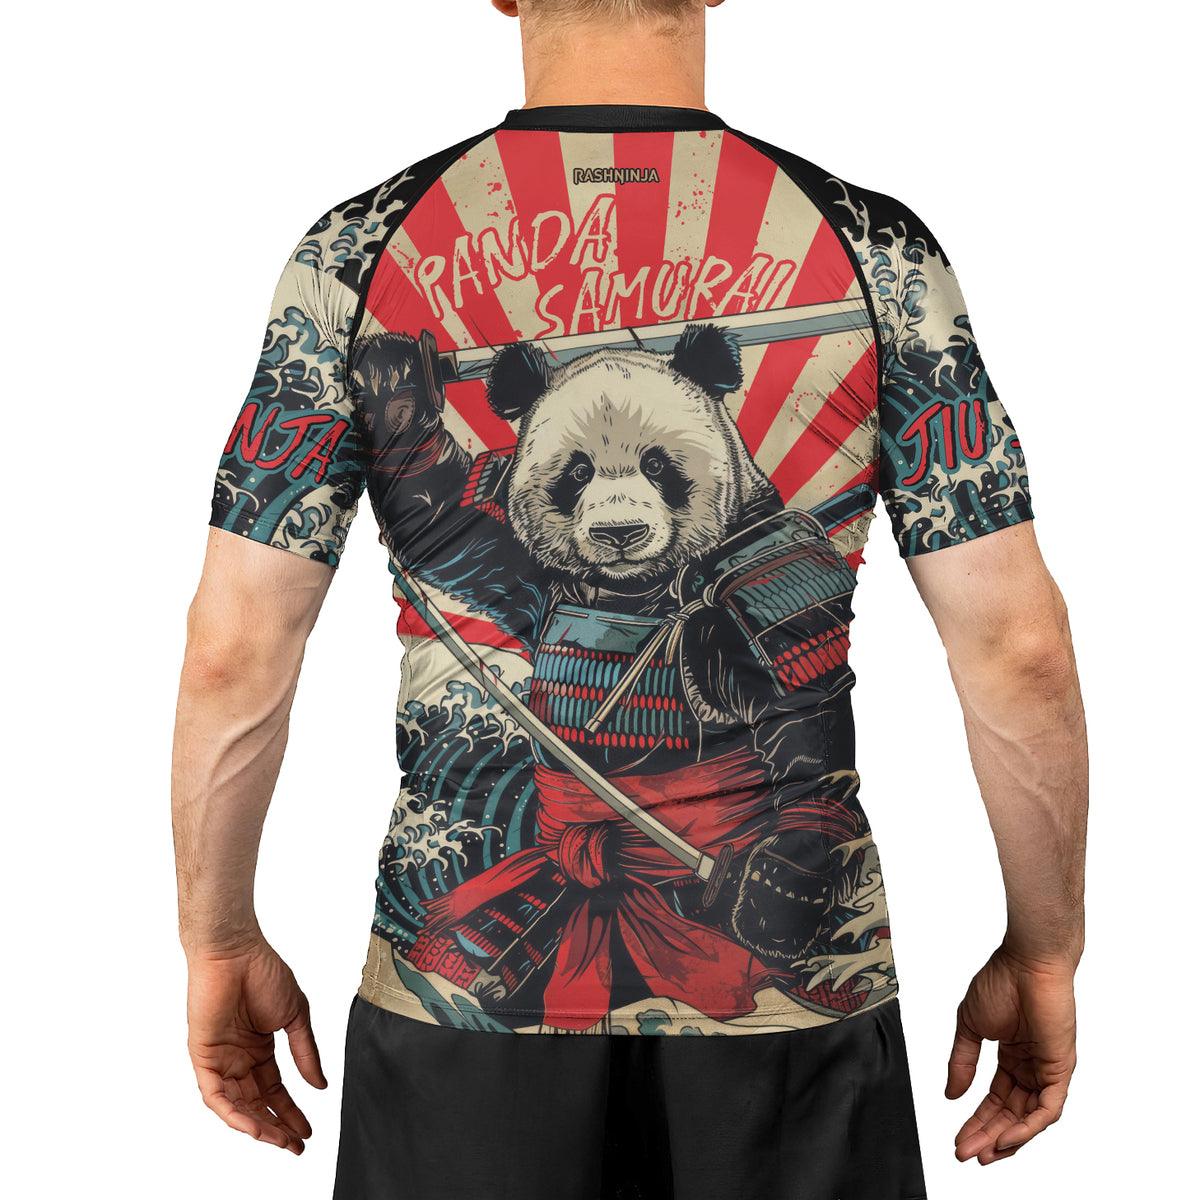 Rashninja Panda Samurai Men's Short Sleeve Rash Guard - Rashninja LLC